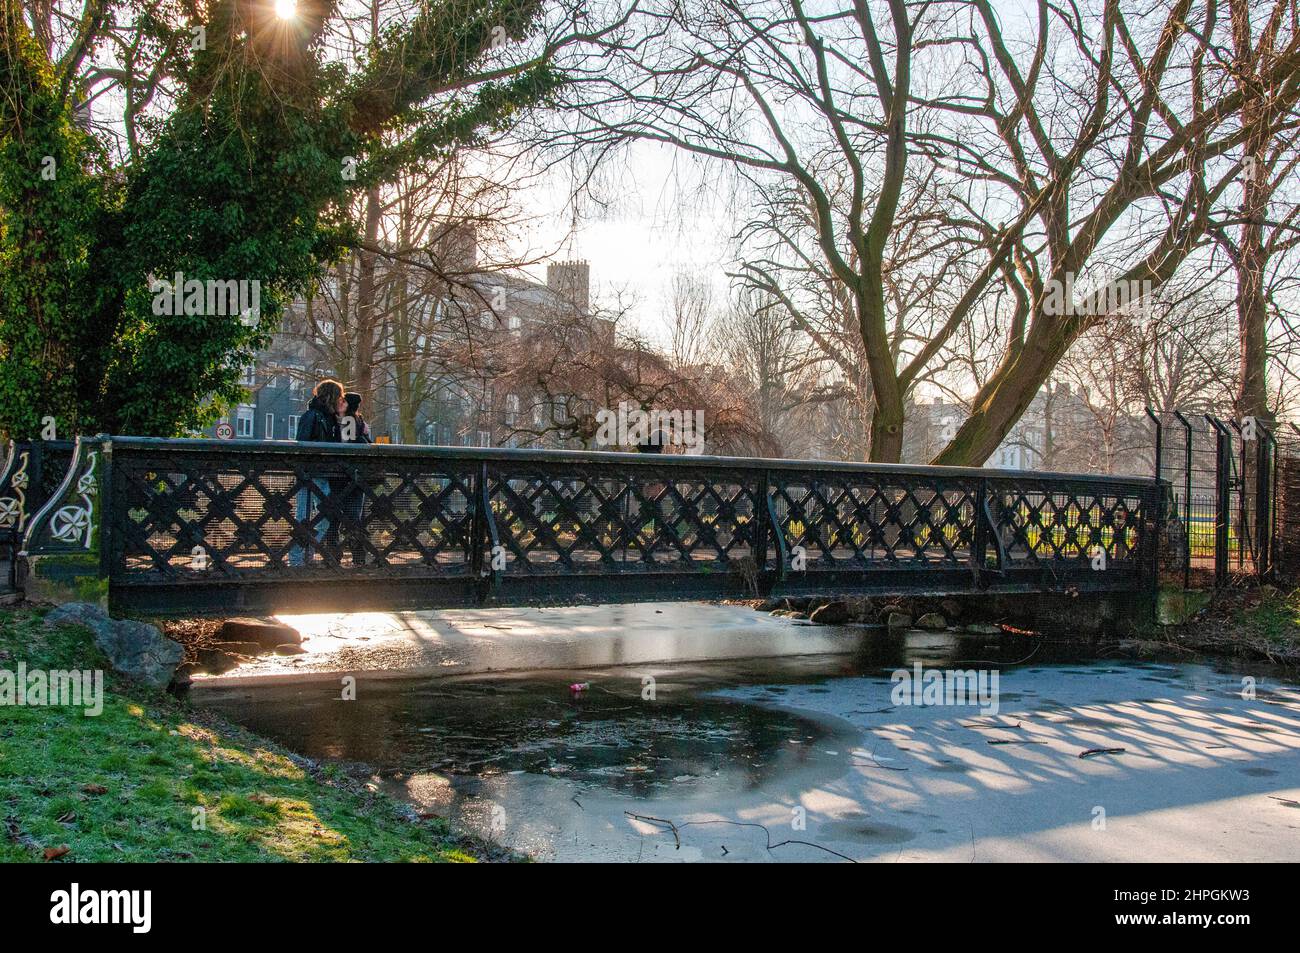 Gente cruzando el puente sobre New River bajo el sol de invierno, el parque Clissud, Stoke Newington, el barrio londinense de Hackney Foto de stock